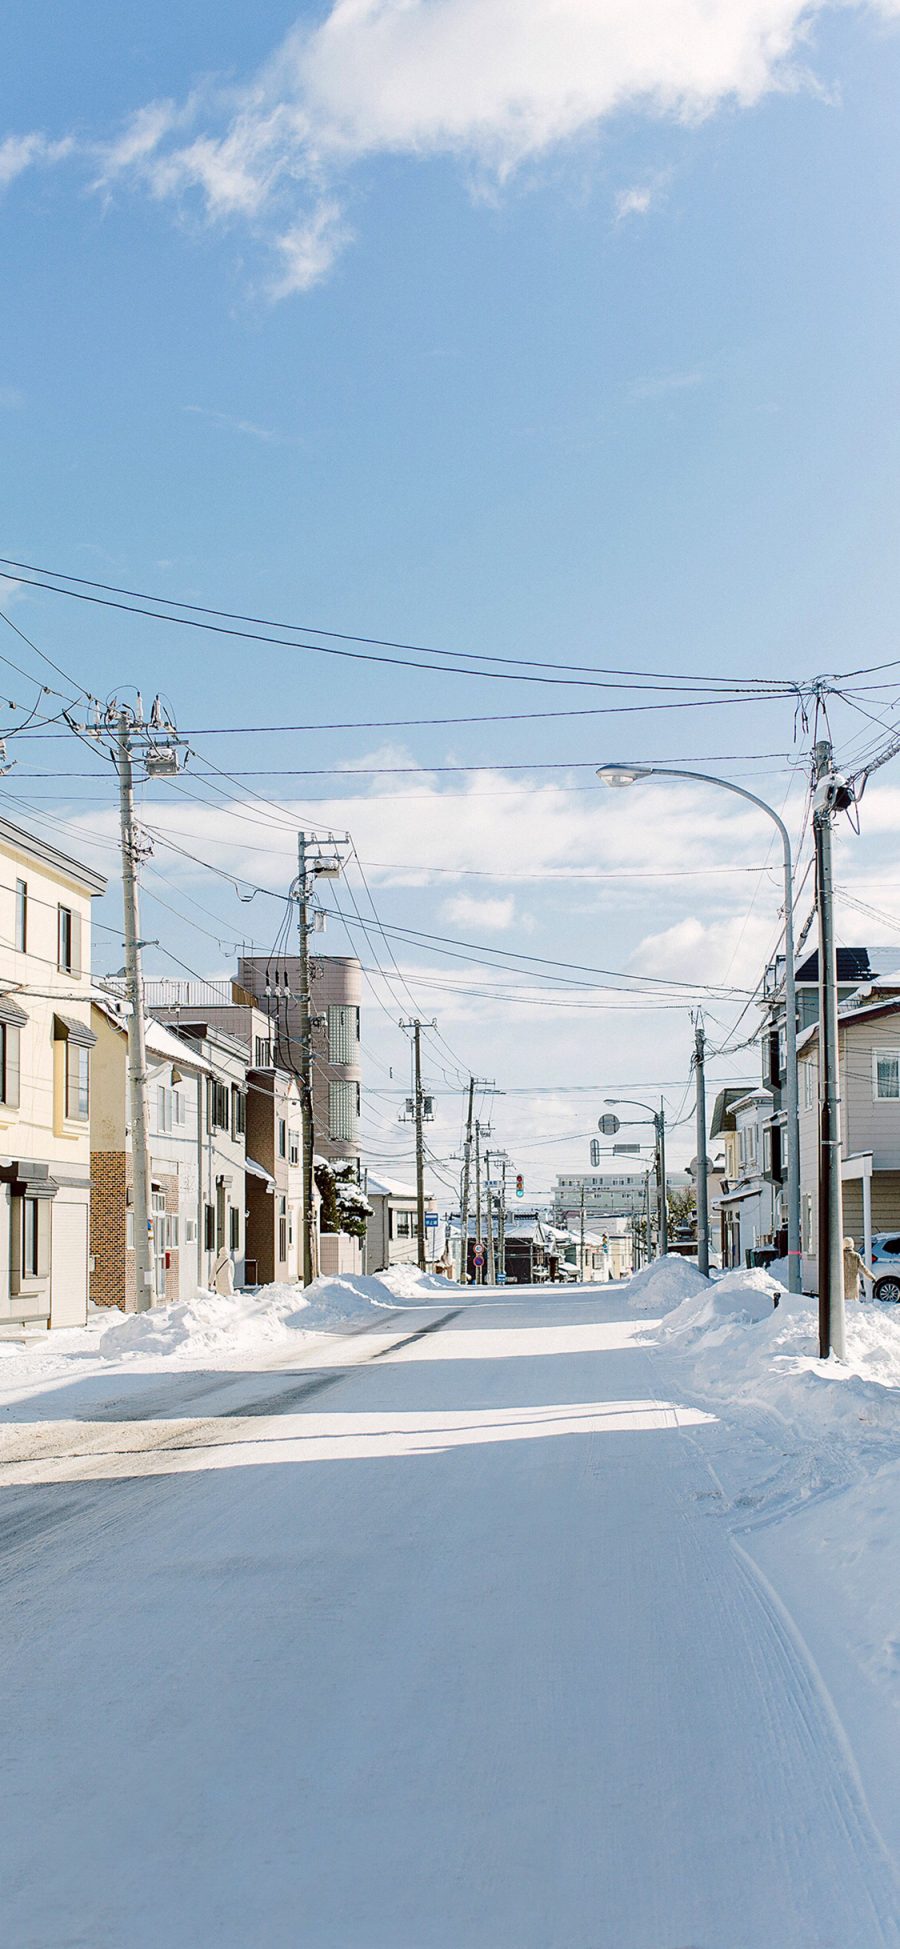 2436 1125 日本北海道雪景覆盖苹果手机壁纸图片 全面屏手机壁纸